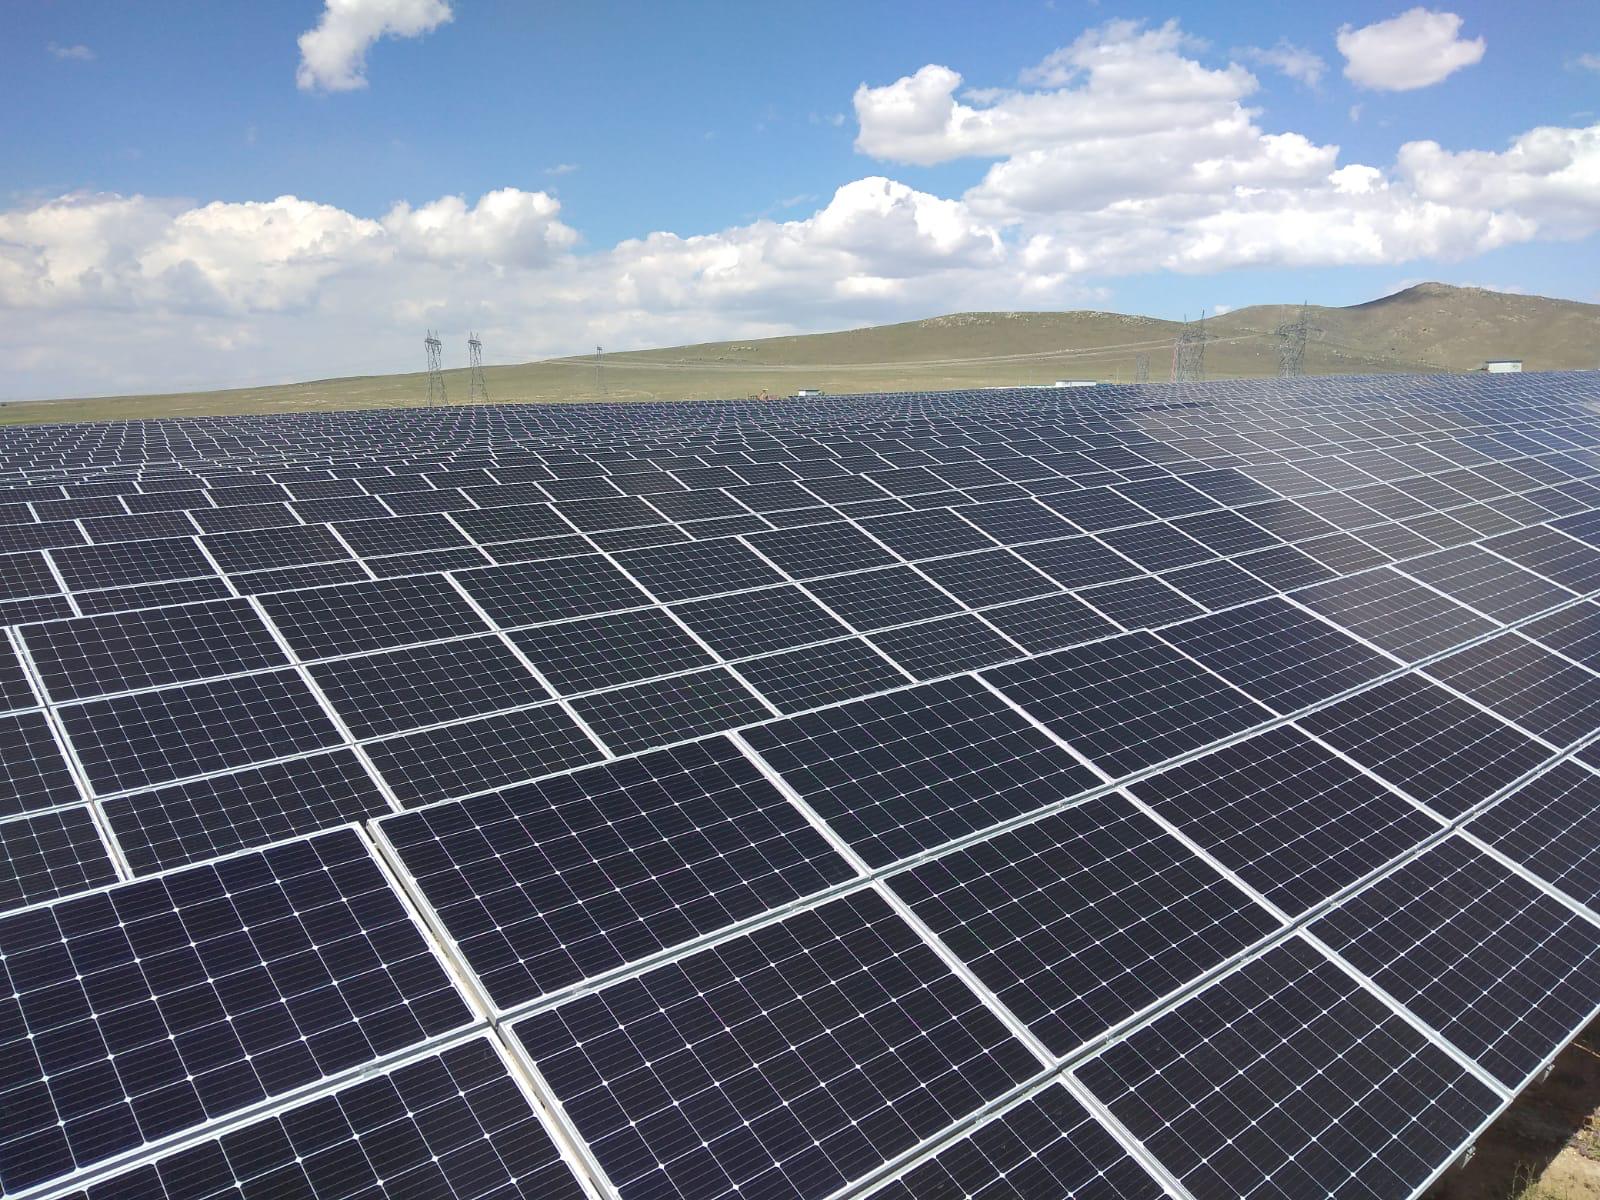 Smart Güneş Teknolojileri, Gebze Fabrikası için GES Kurma Kararı Aldı